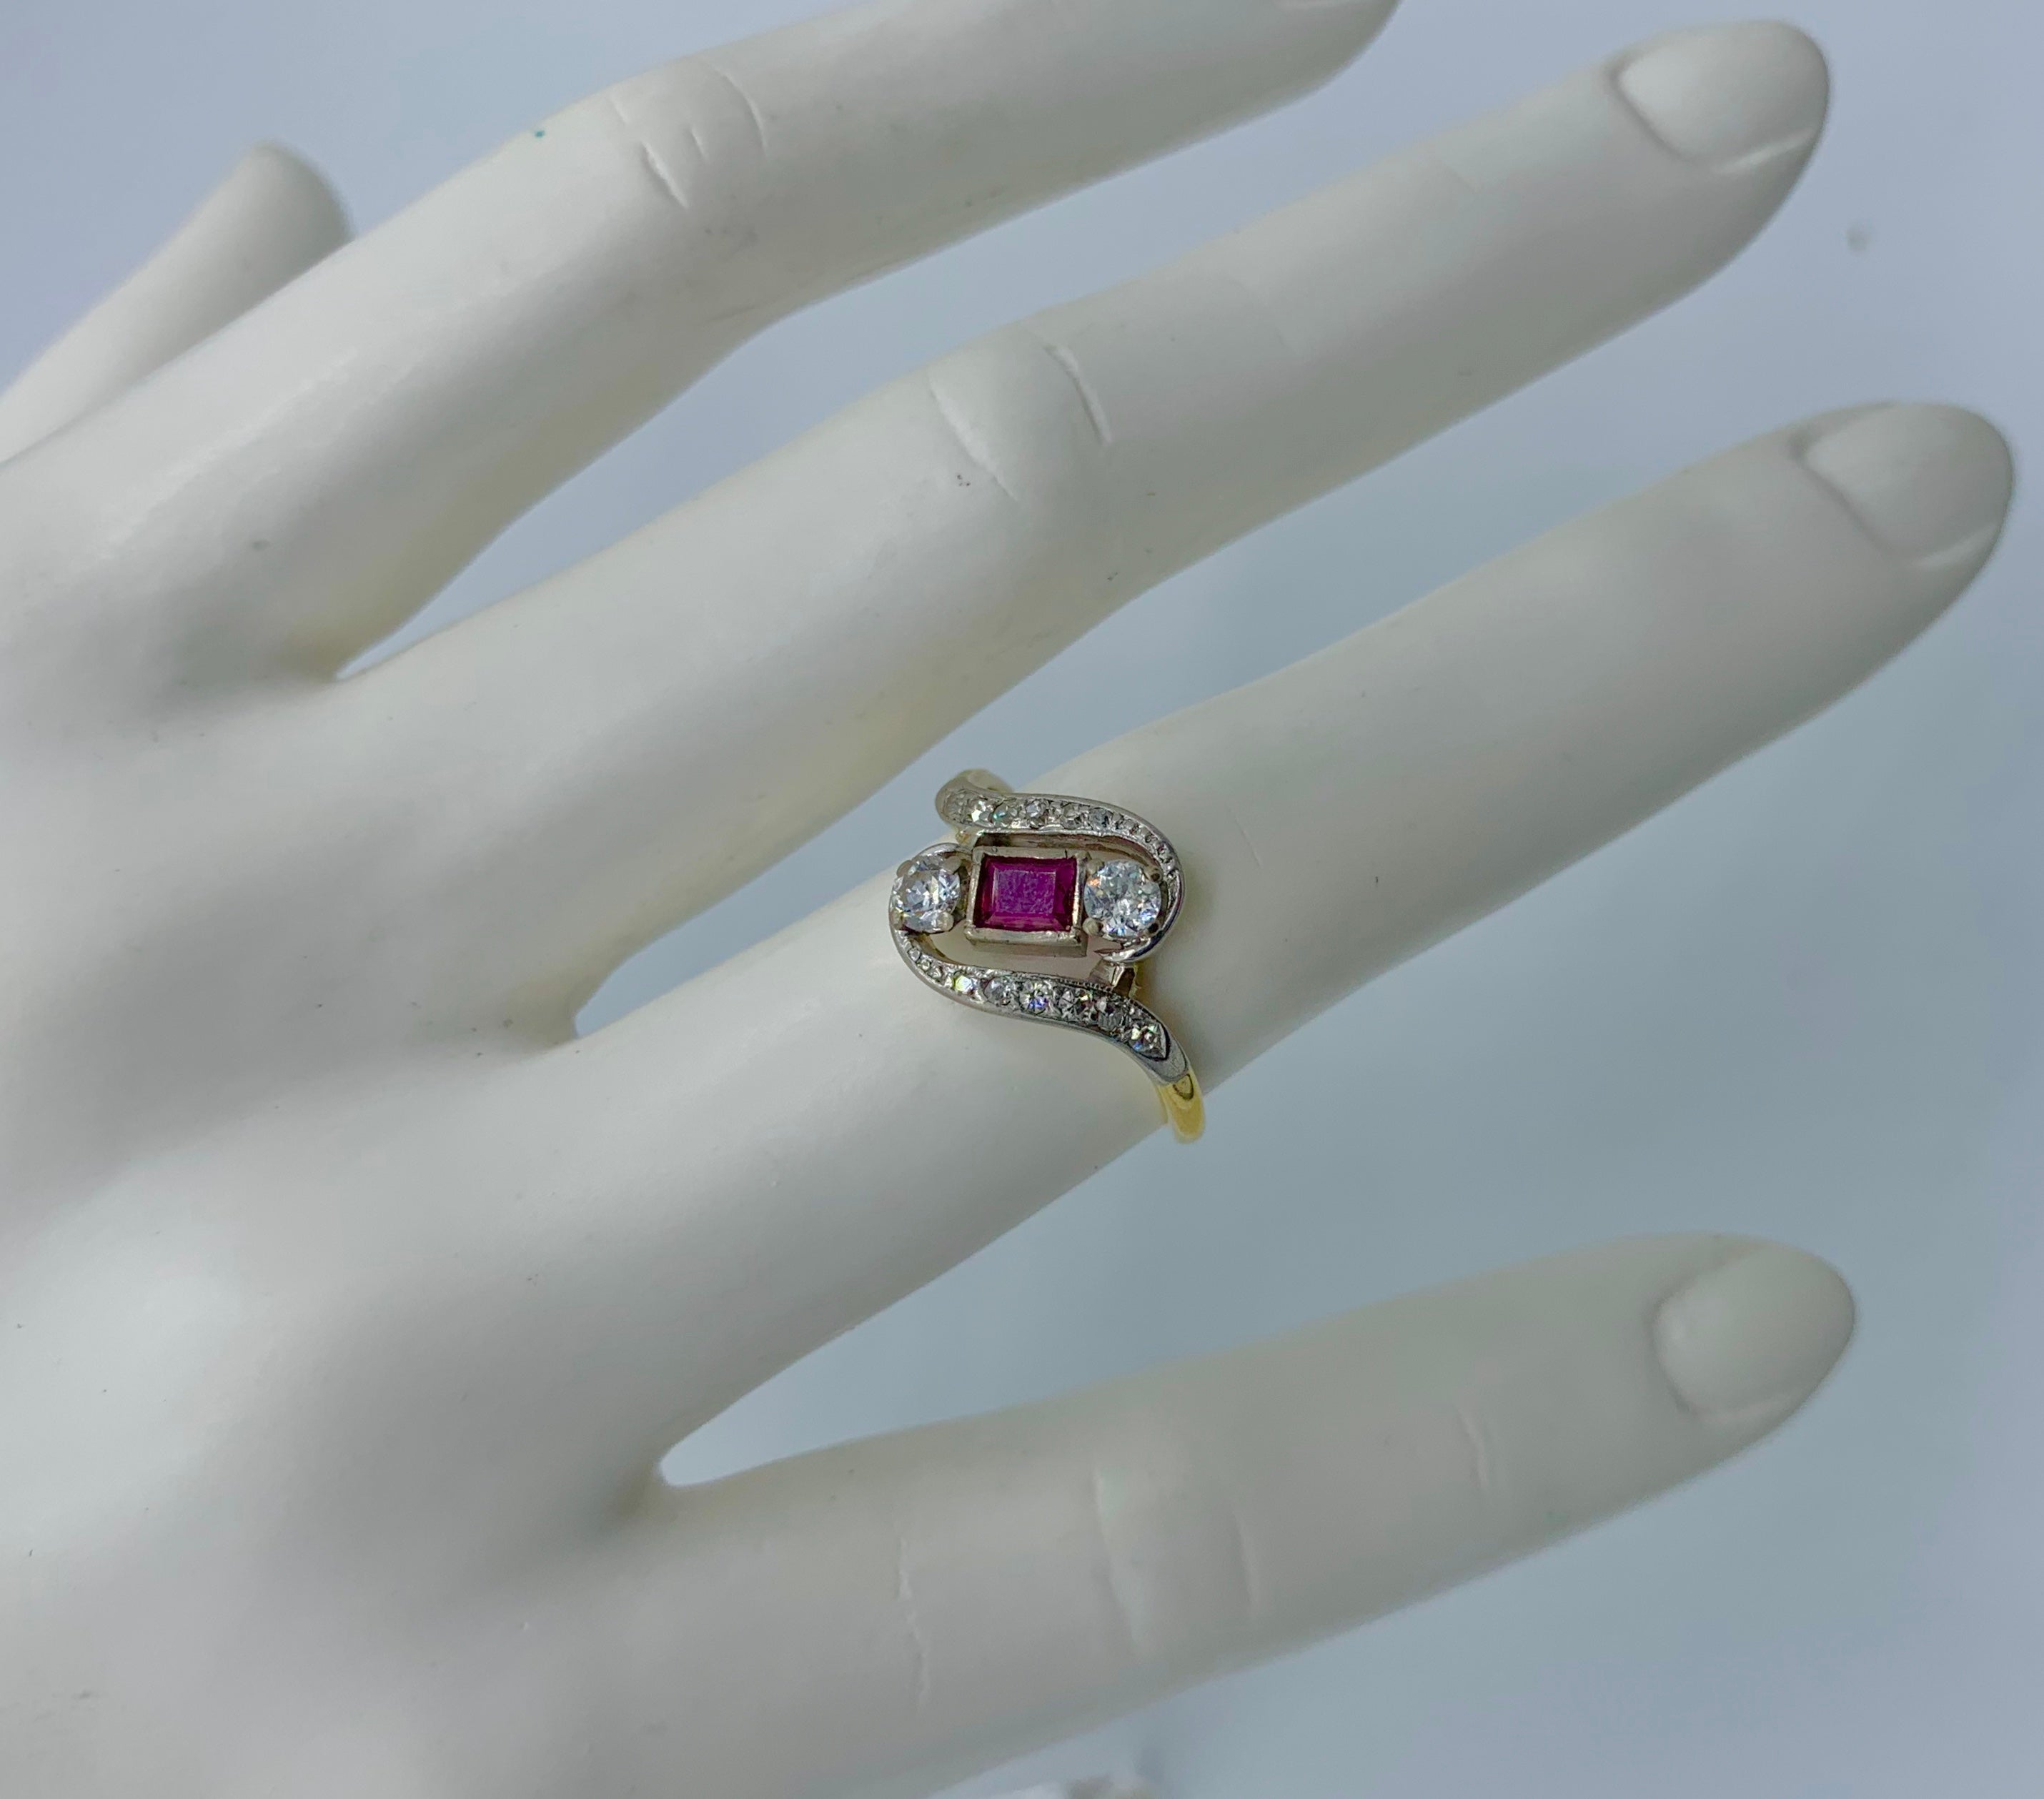 Dies ist eine antike viktorianische - Art Deco Ring mit einem herrlichen natürlichen Smaragd geschnitten Rubin und Diamanten von atemberaubender Schönheit. Das durchbrochene, wirbelnde Design des Art-Déco-Rings ist absolut wunderbar und sehr selten.